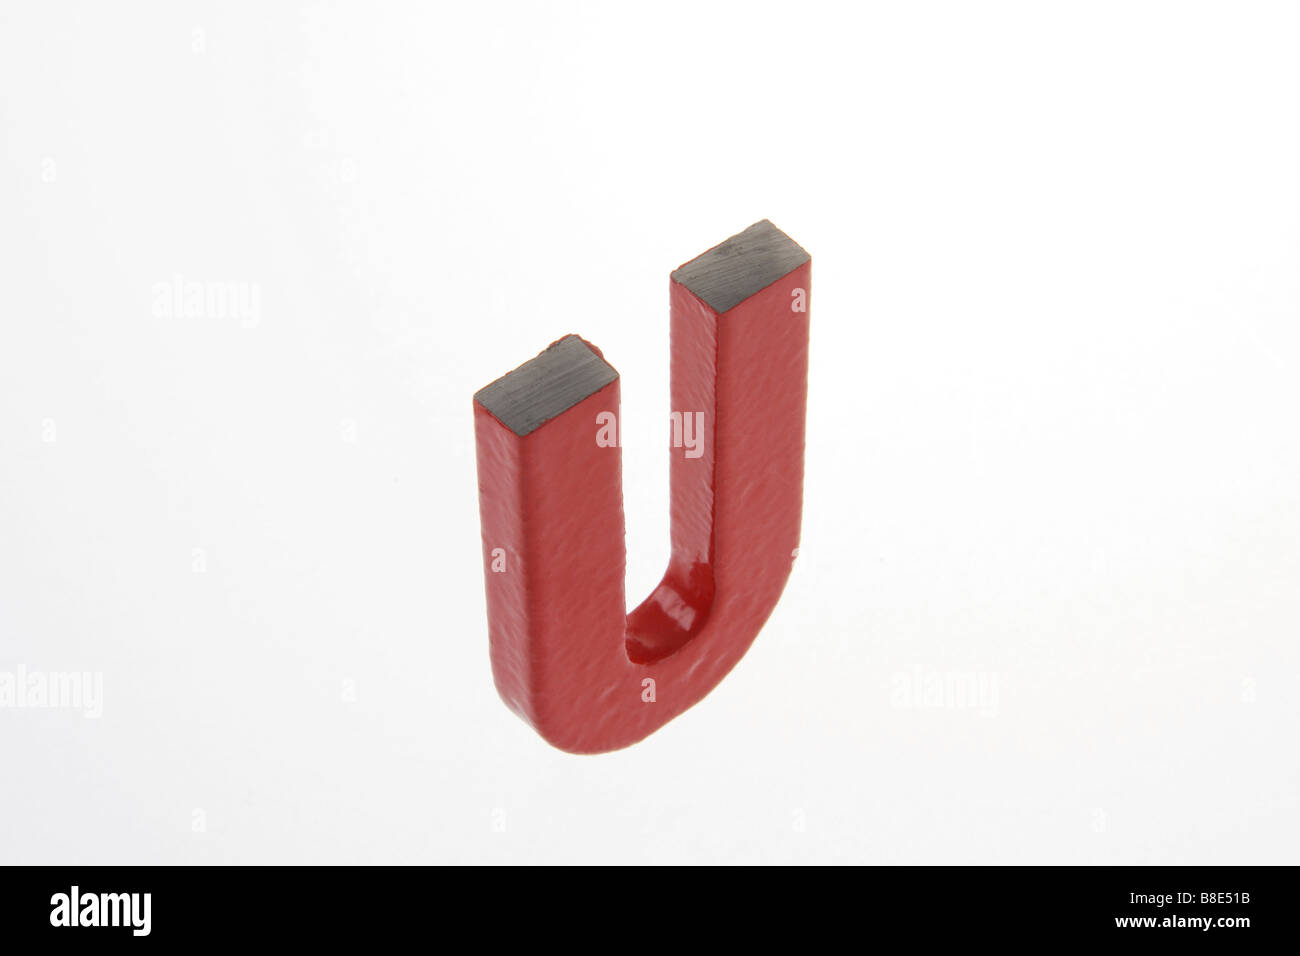 clip image plastic coated horseshoe magnet Stock Photo